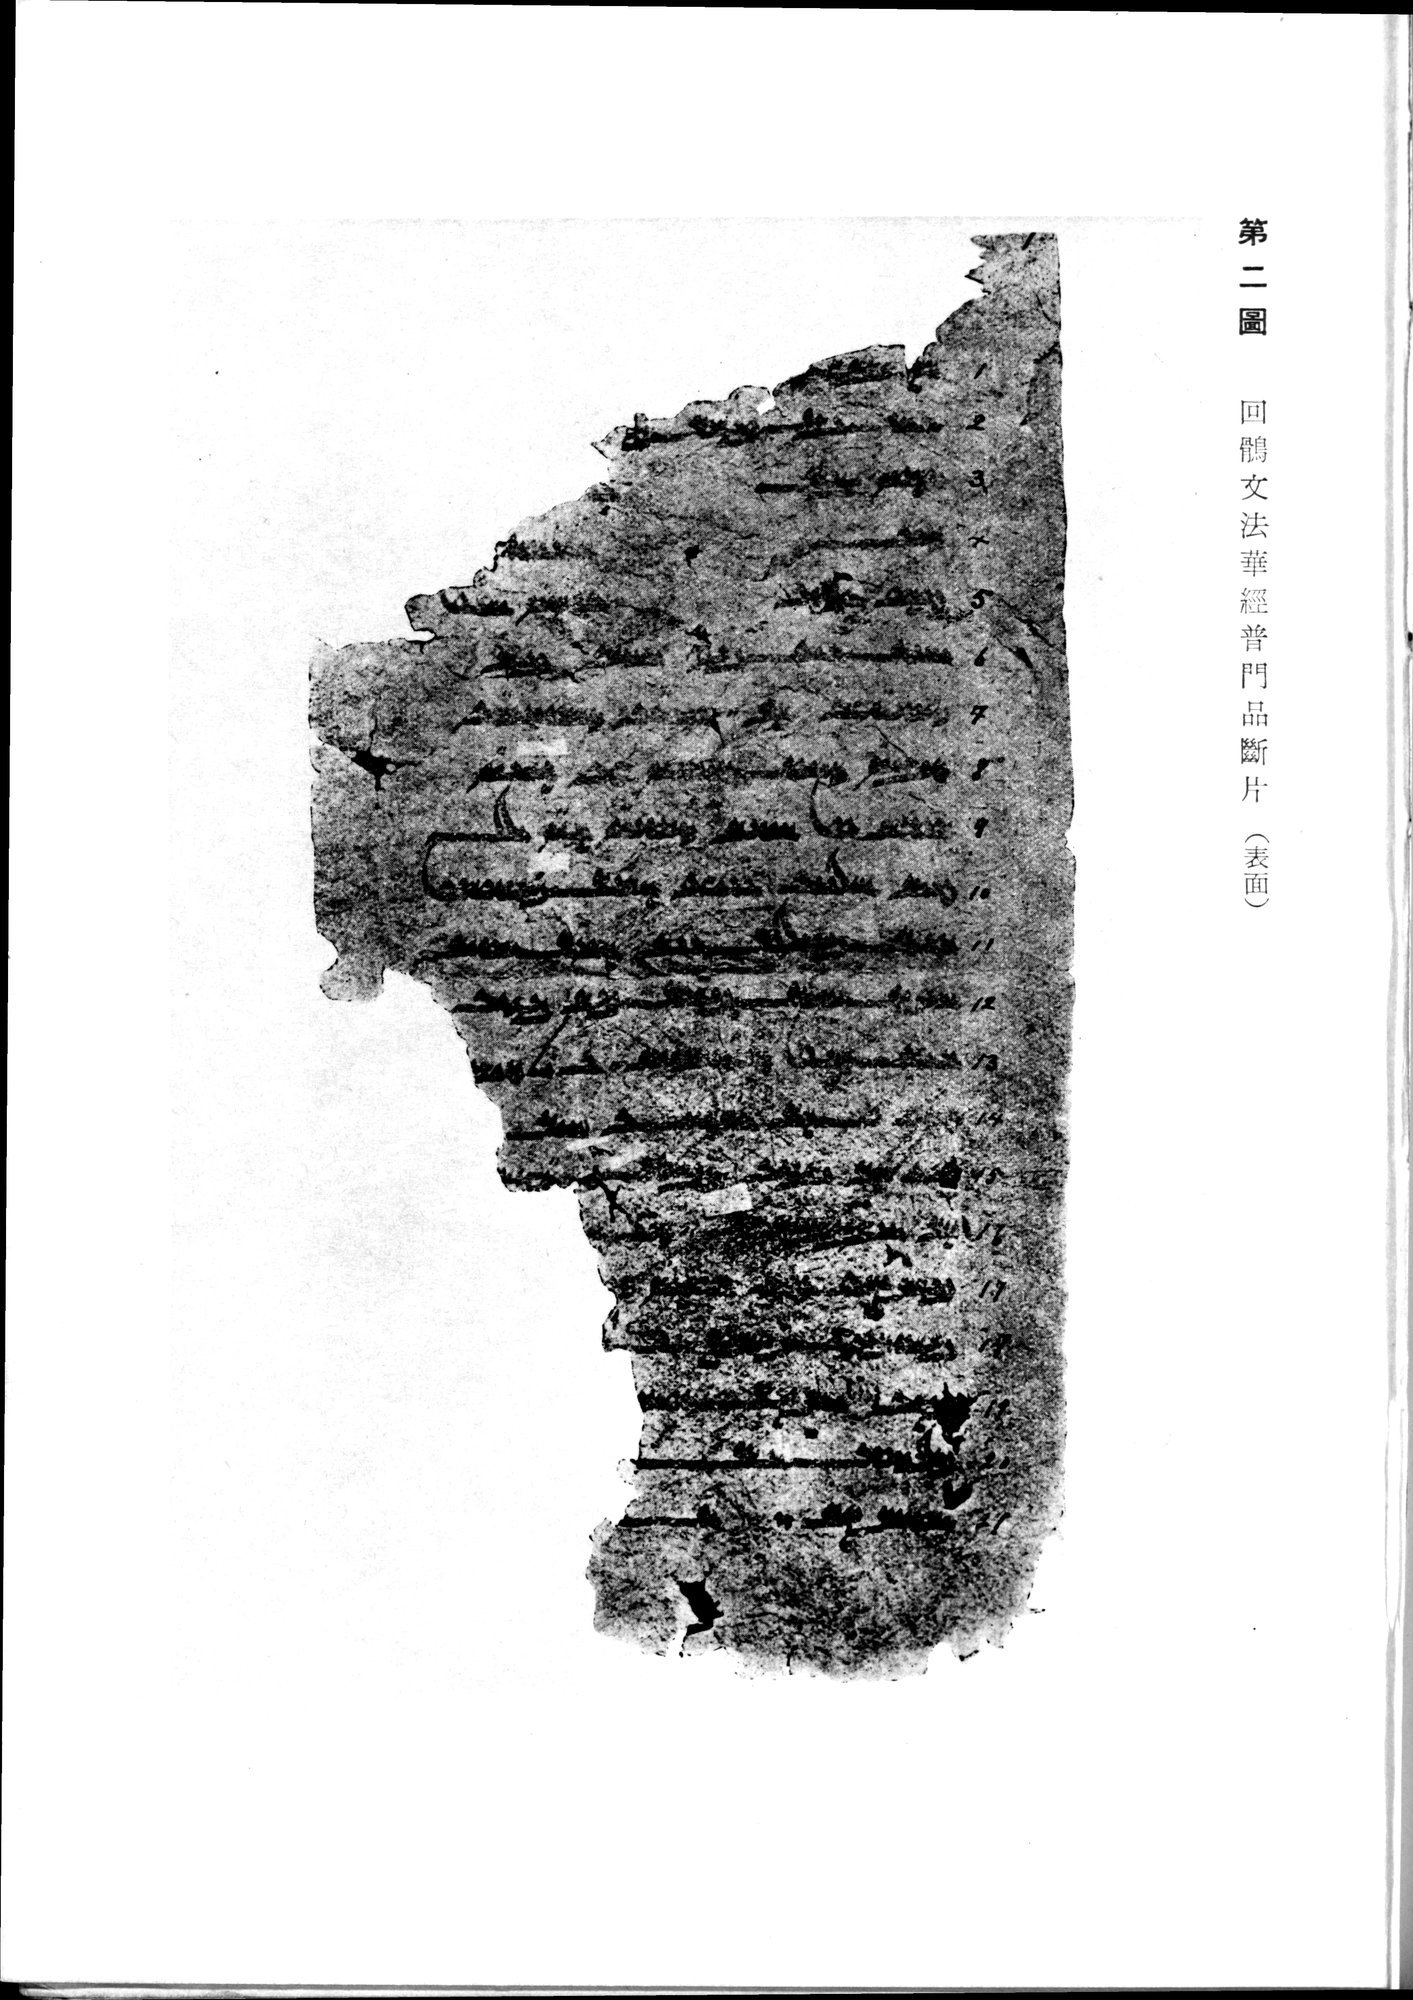 羽田博士史学論文集 : vol.2 / 9 ページ（白黒高解像度画像）